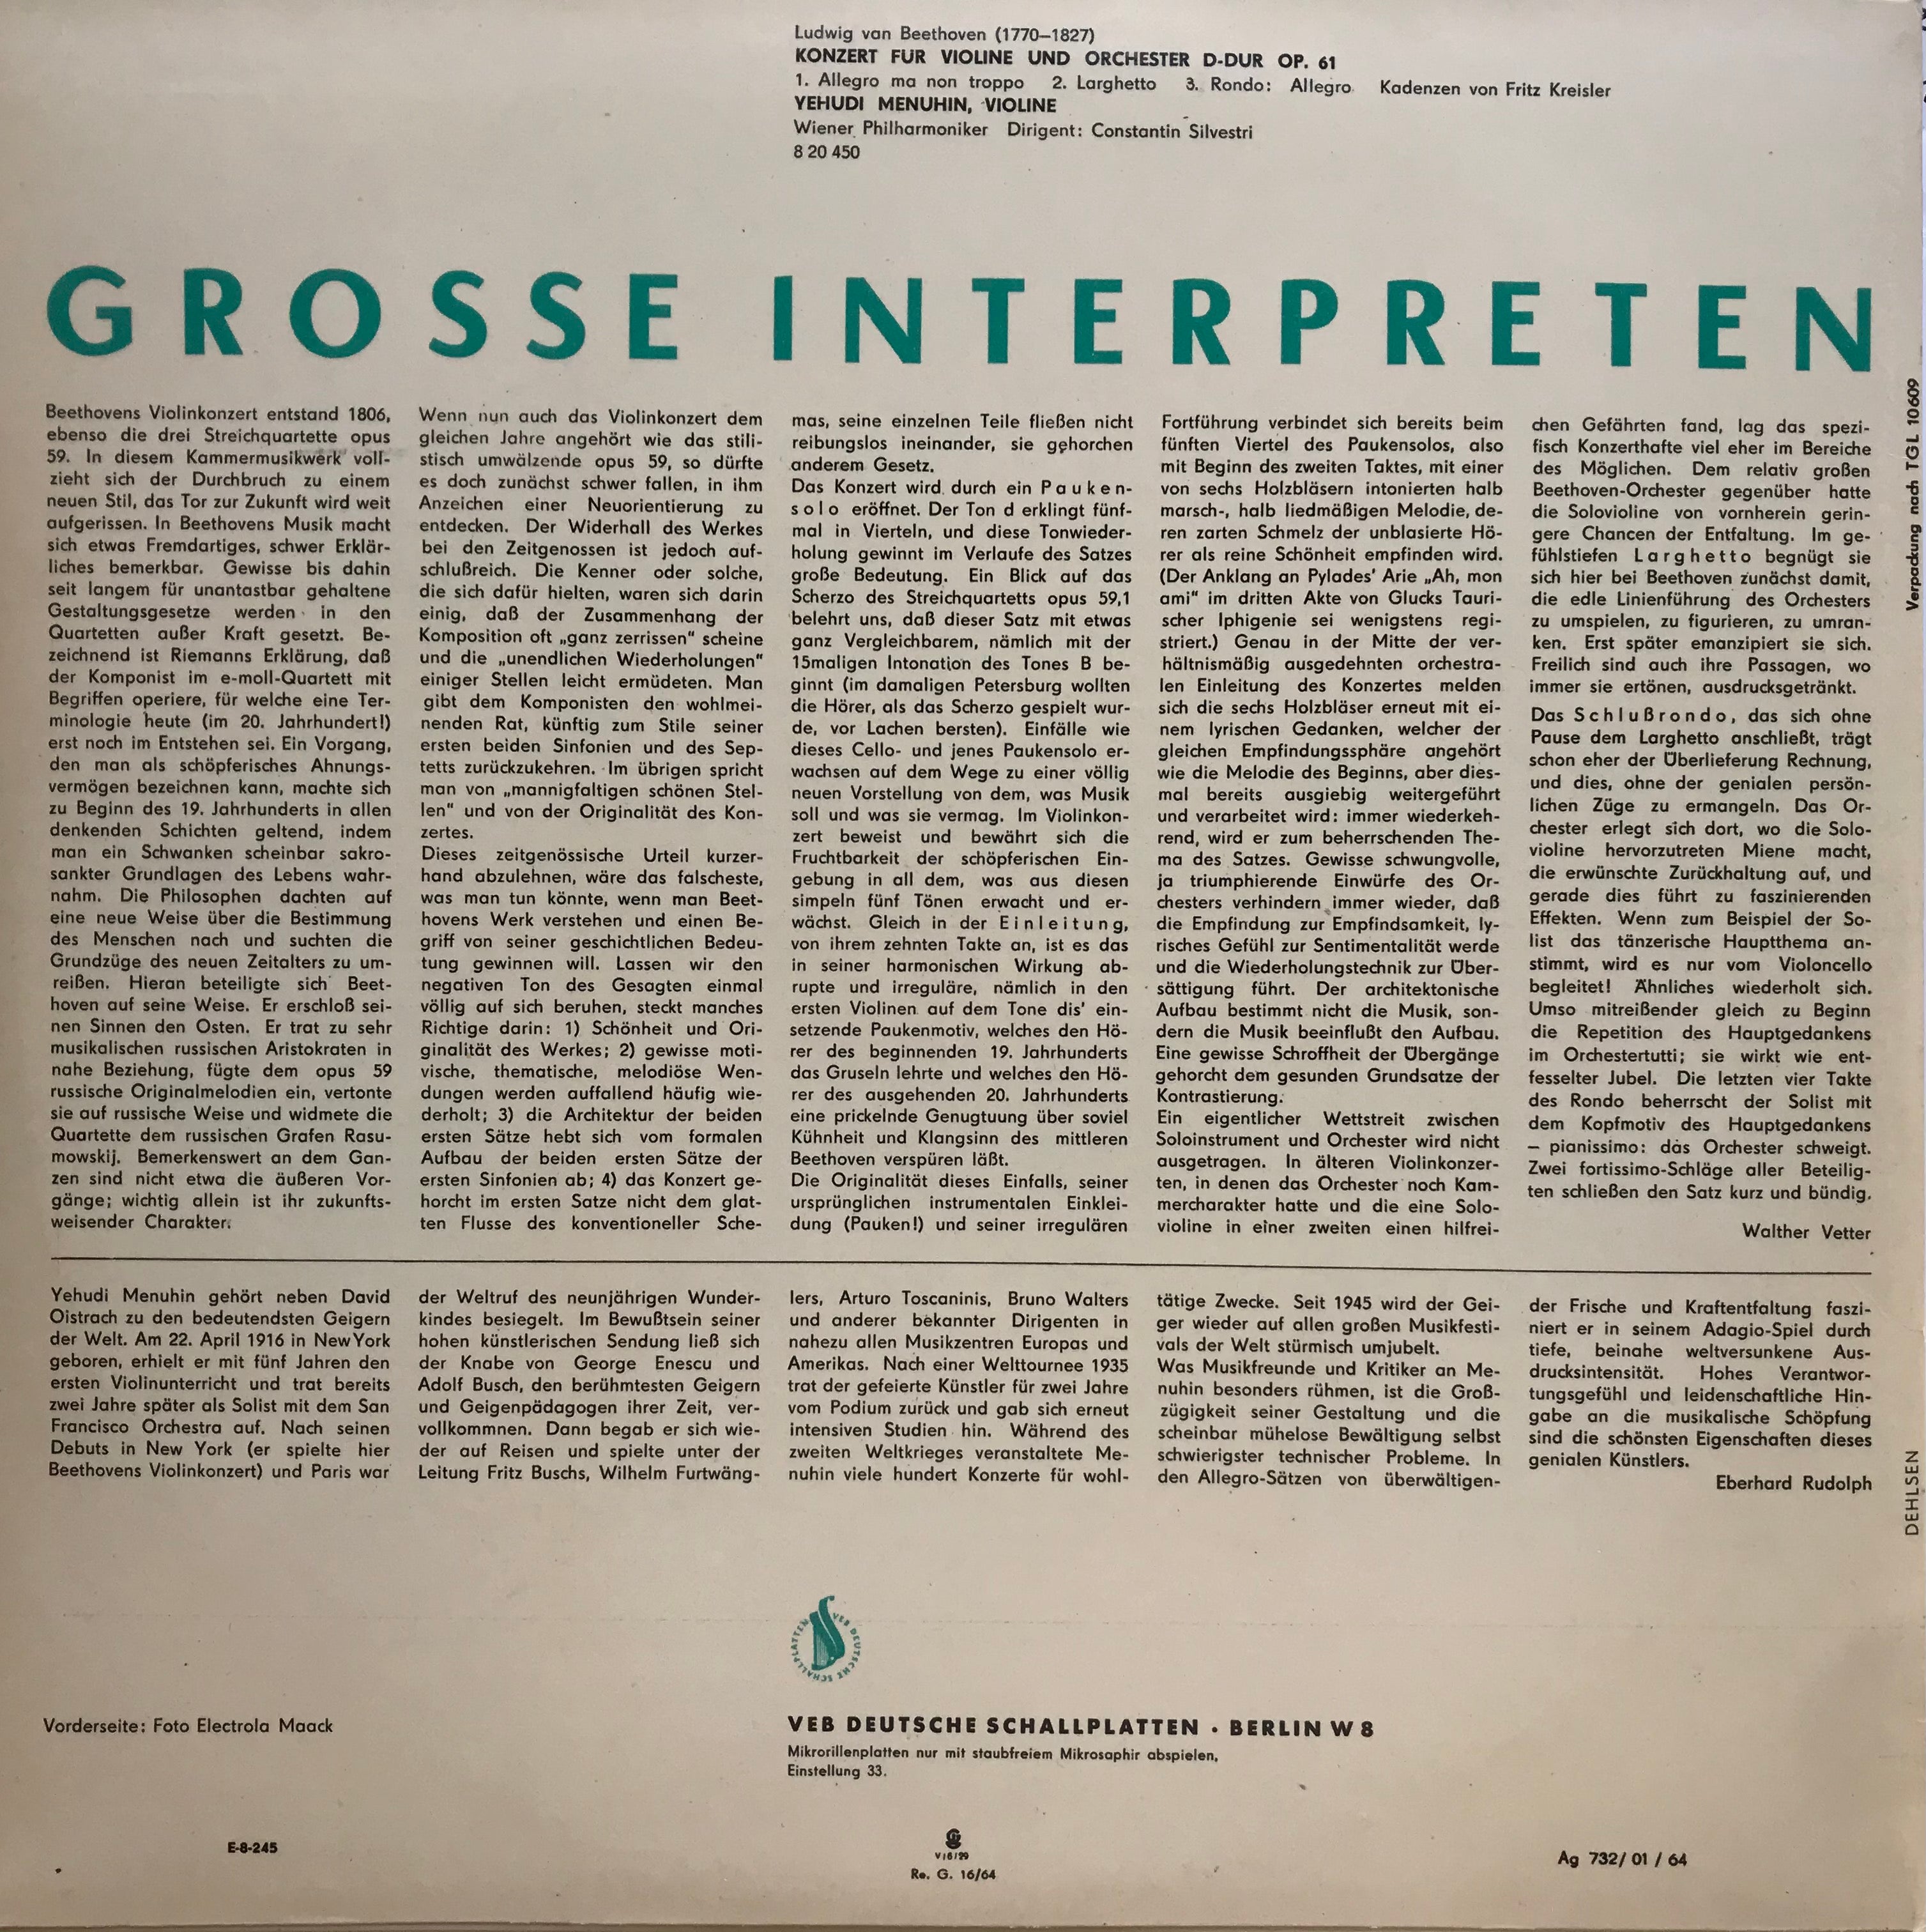 GROSSE INTERPRETEN - Ludwig van Beethoven (LP)